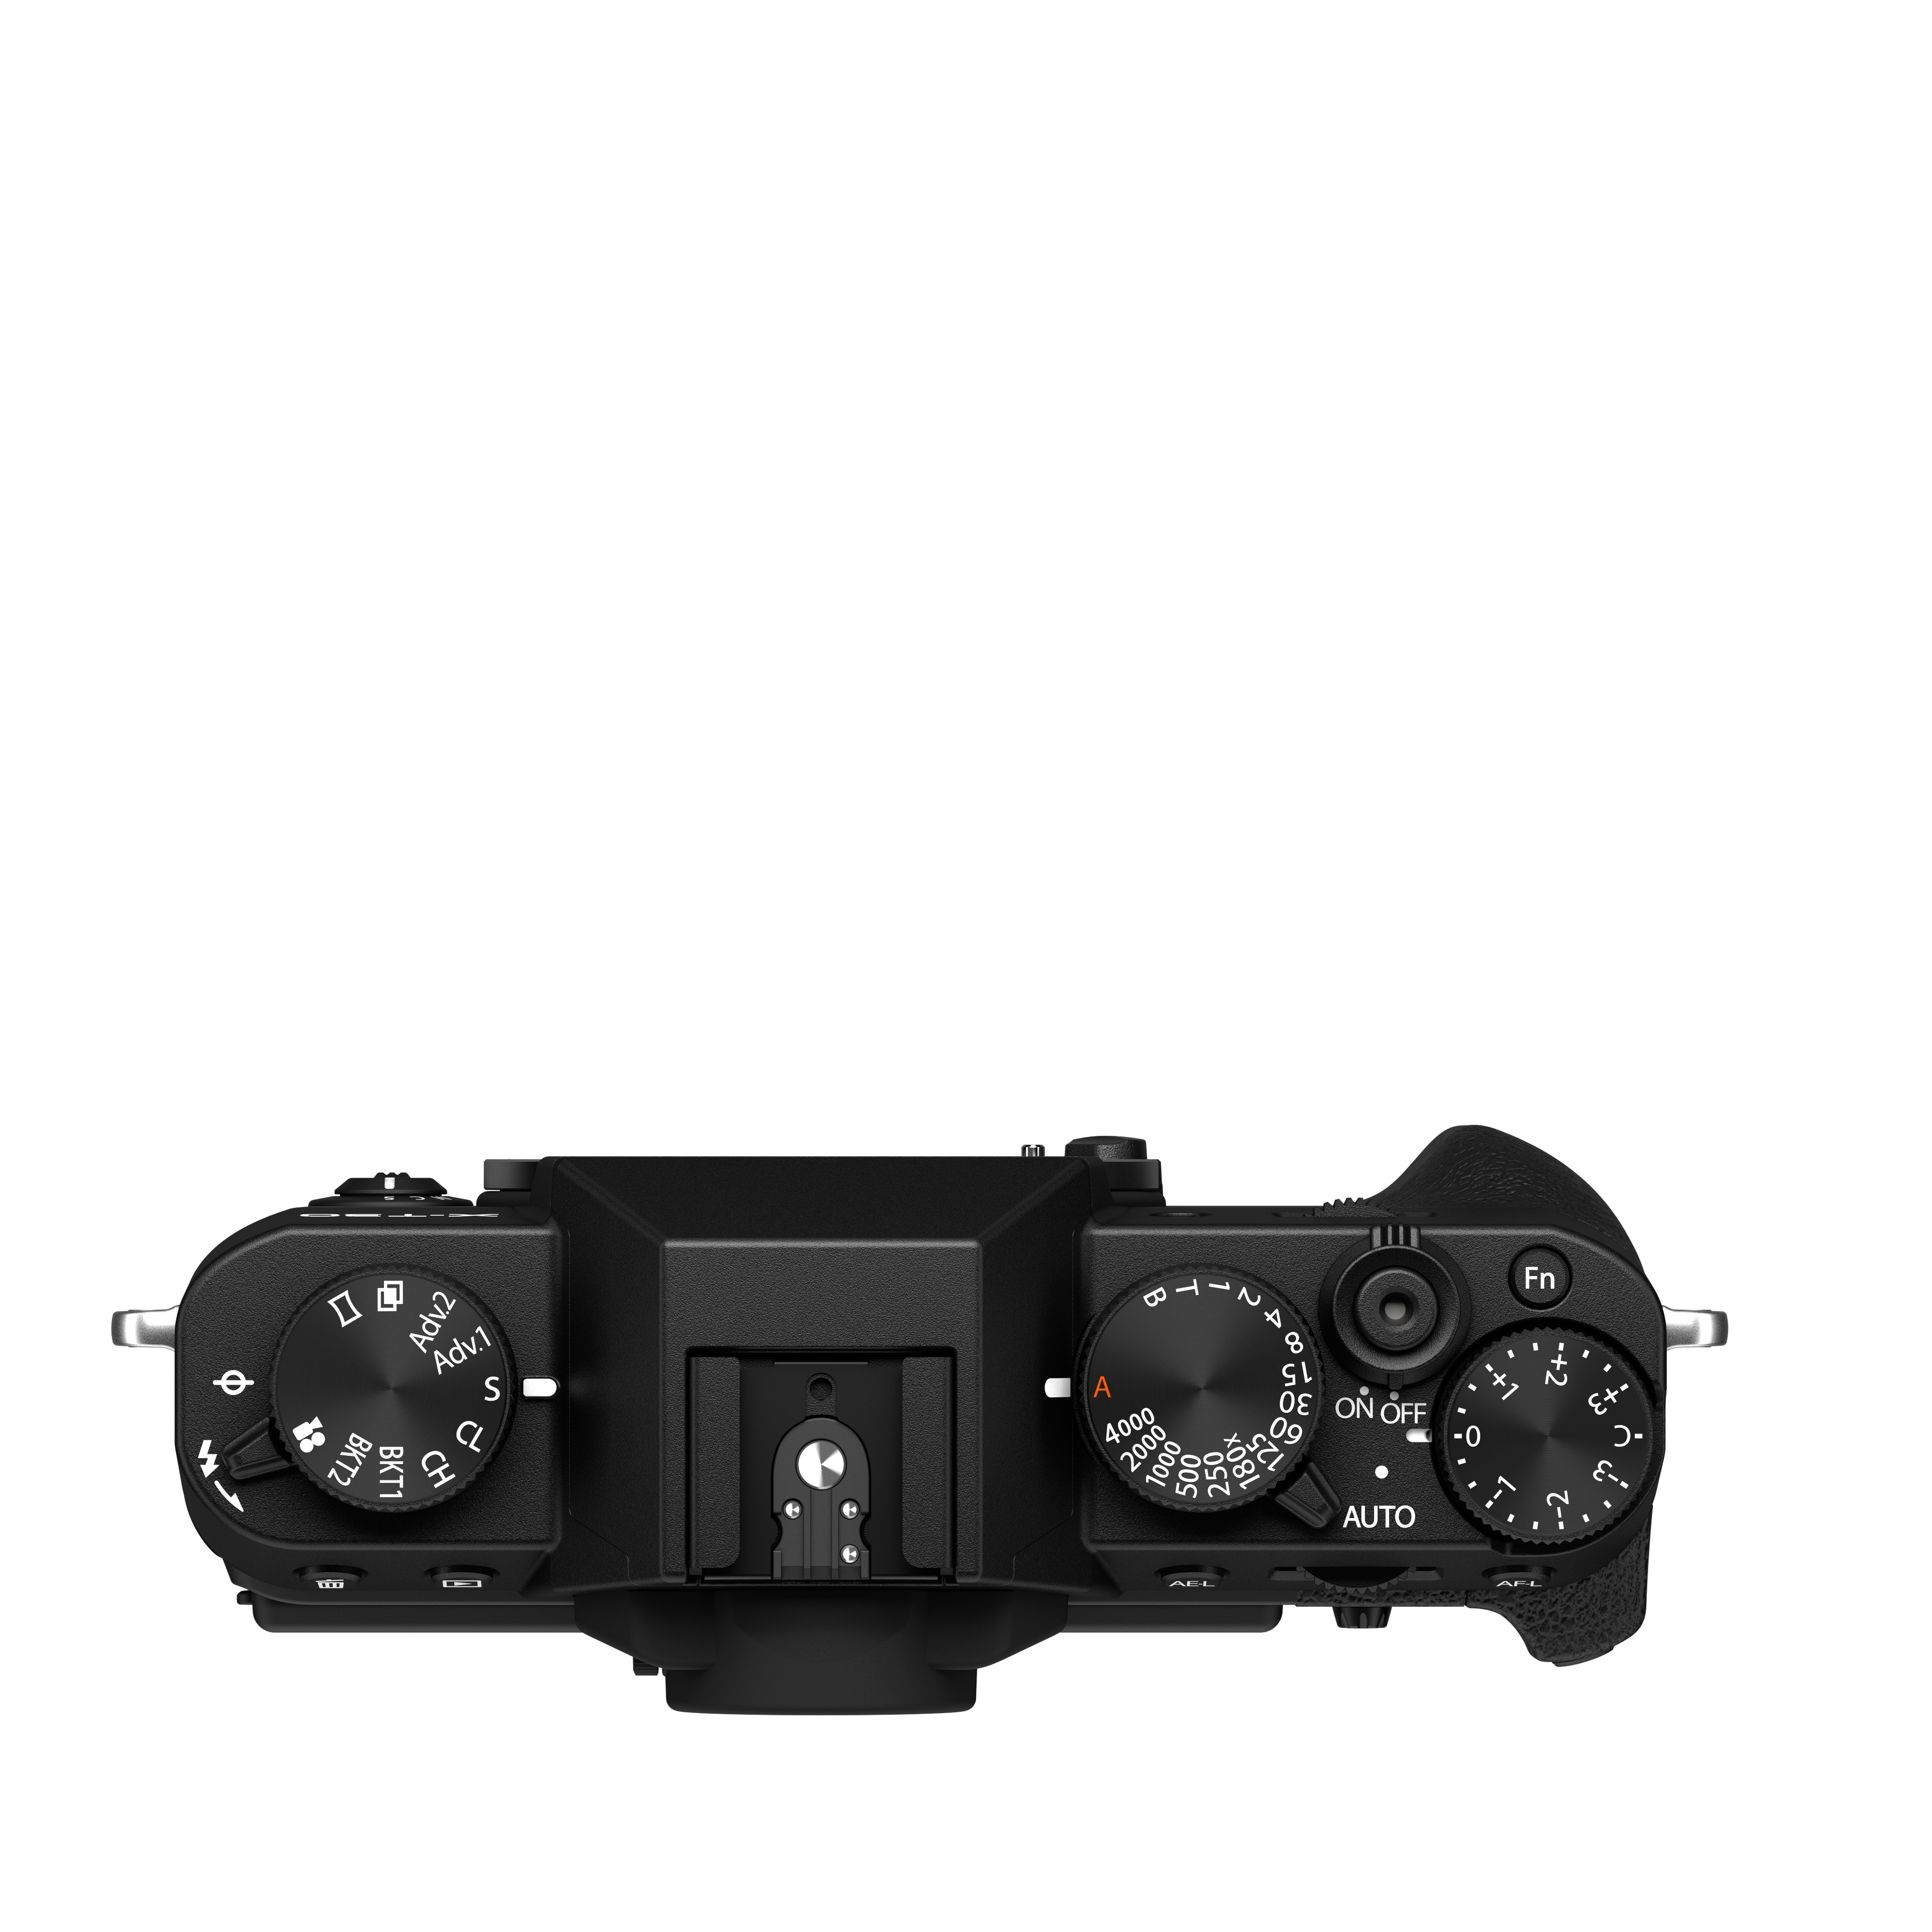  Fujifilm X-T30 II Body - Black : Electronics